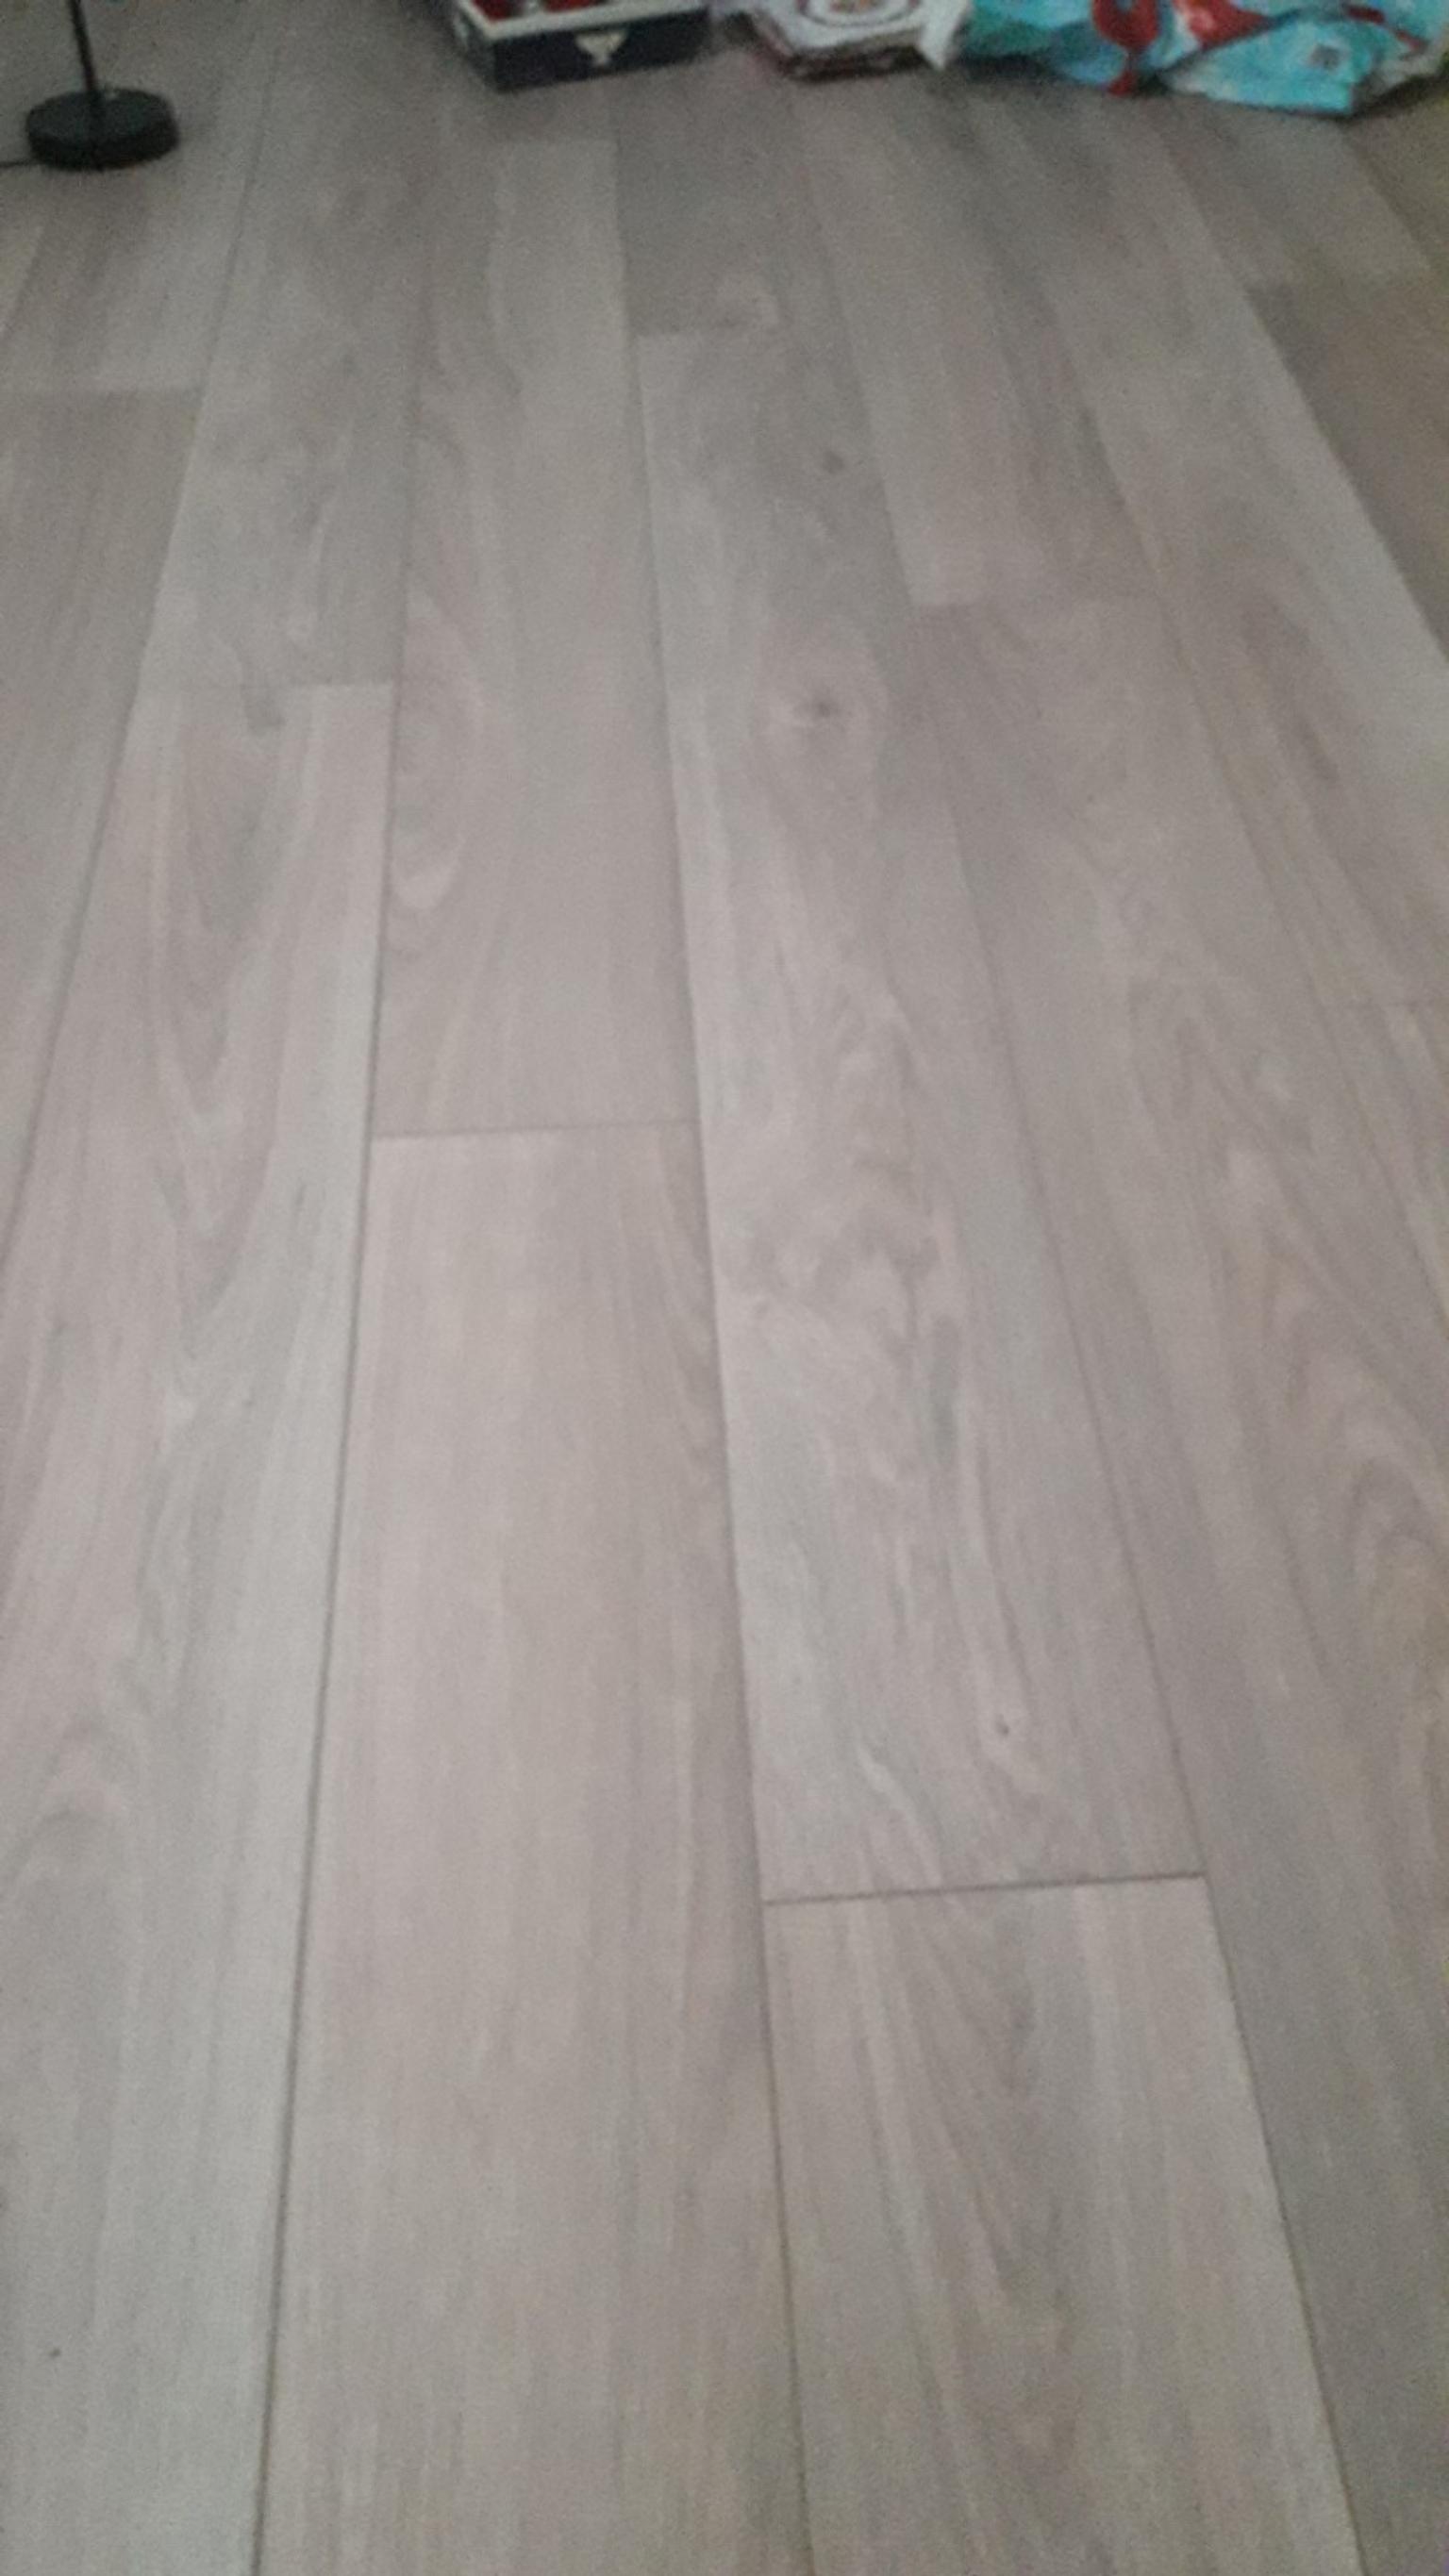 Wooden Laminate Floor Layer In L30 Sefton Fur Gratis Zum Verkauf